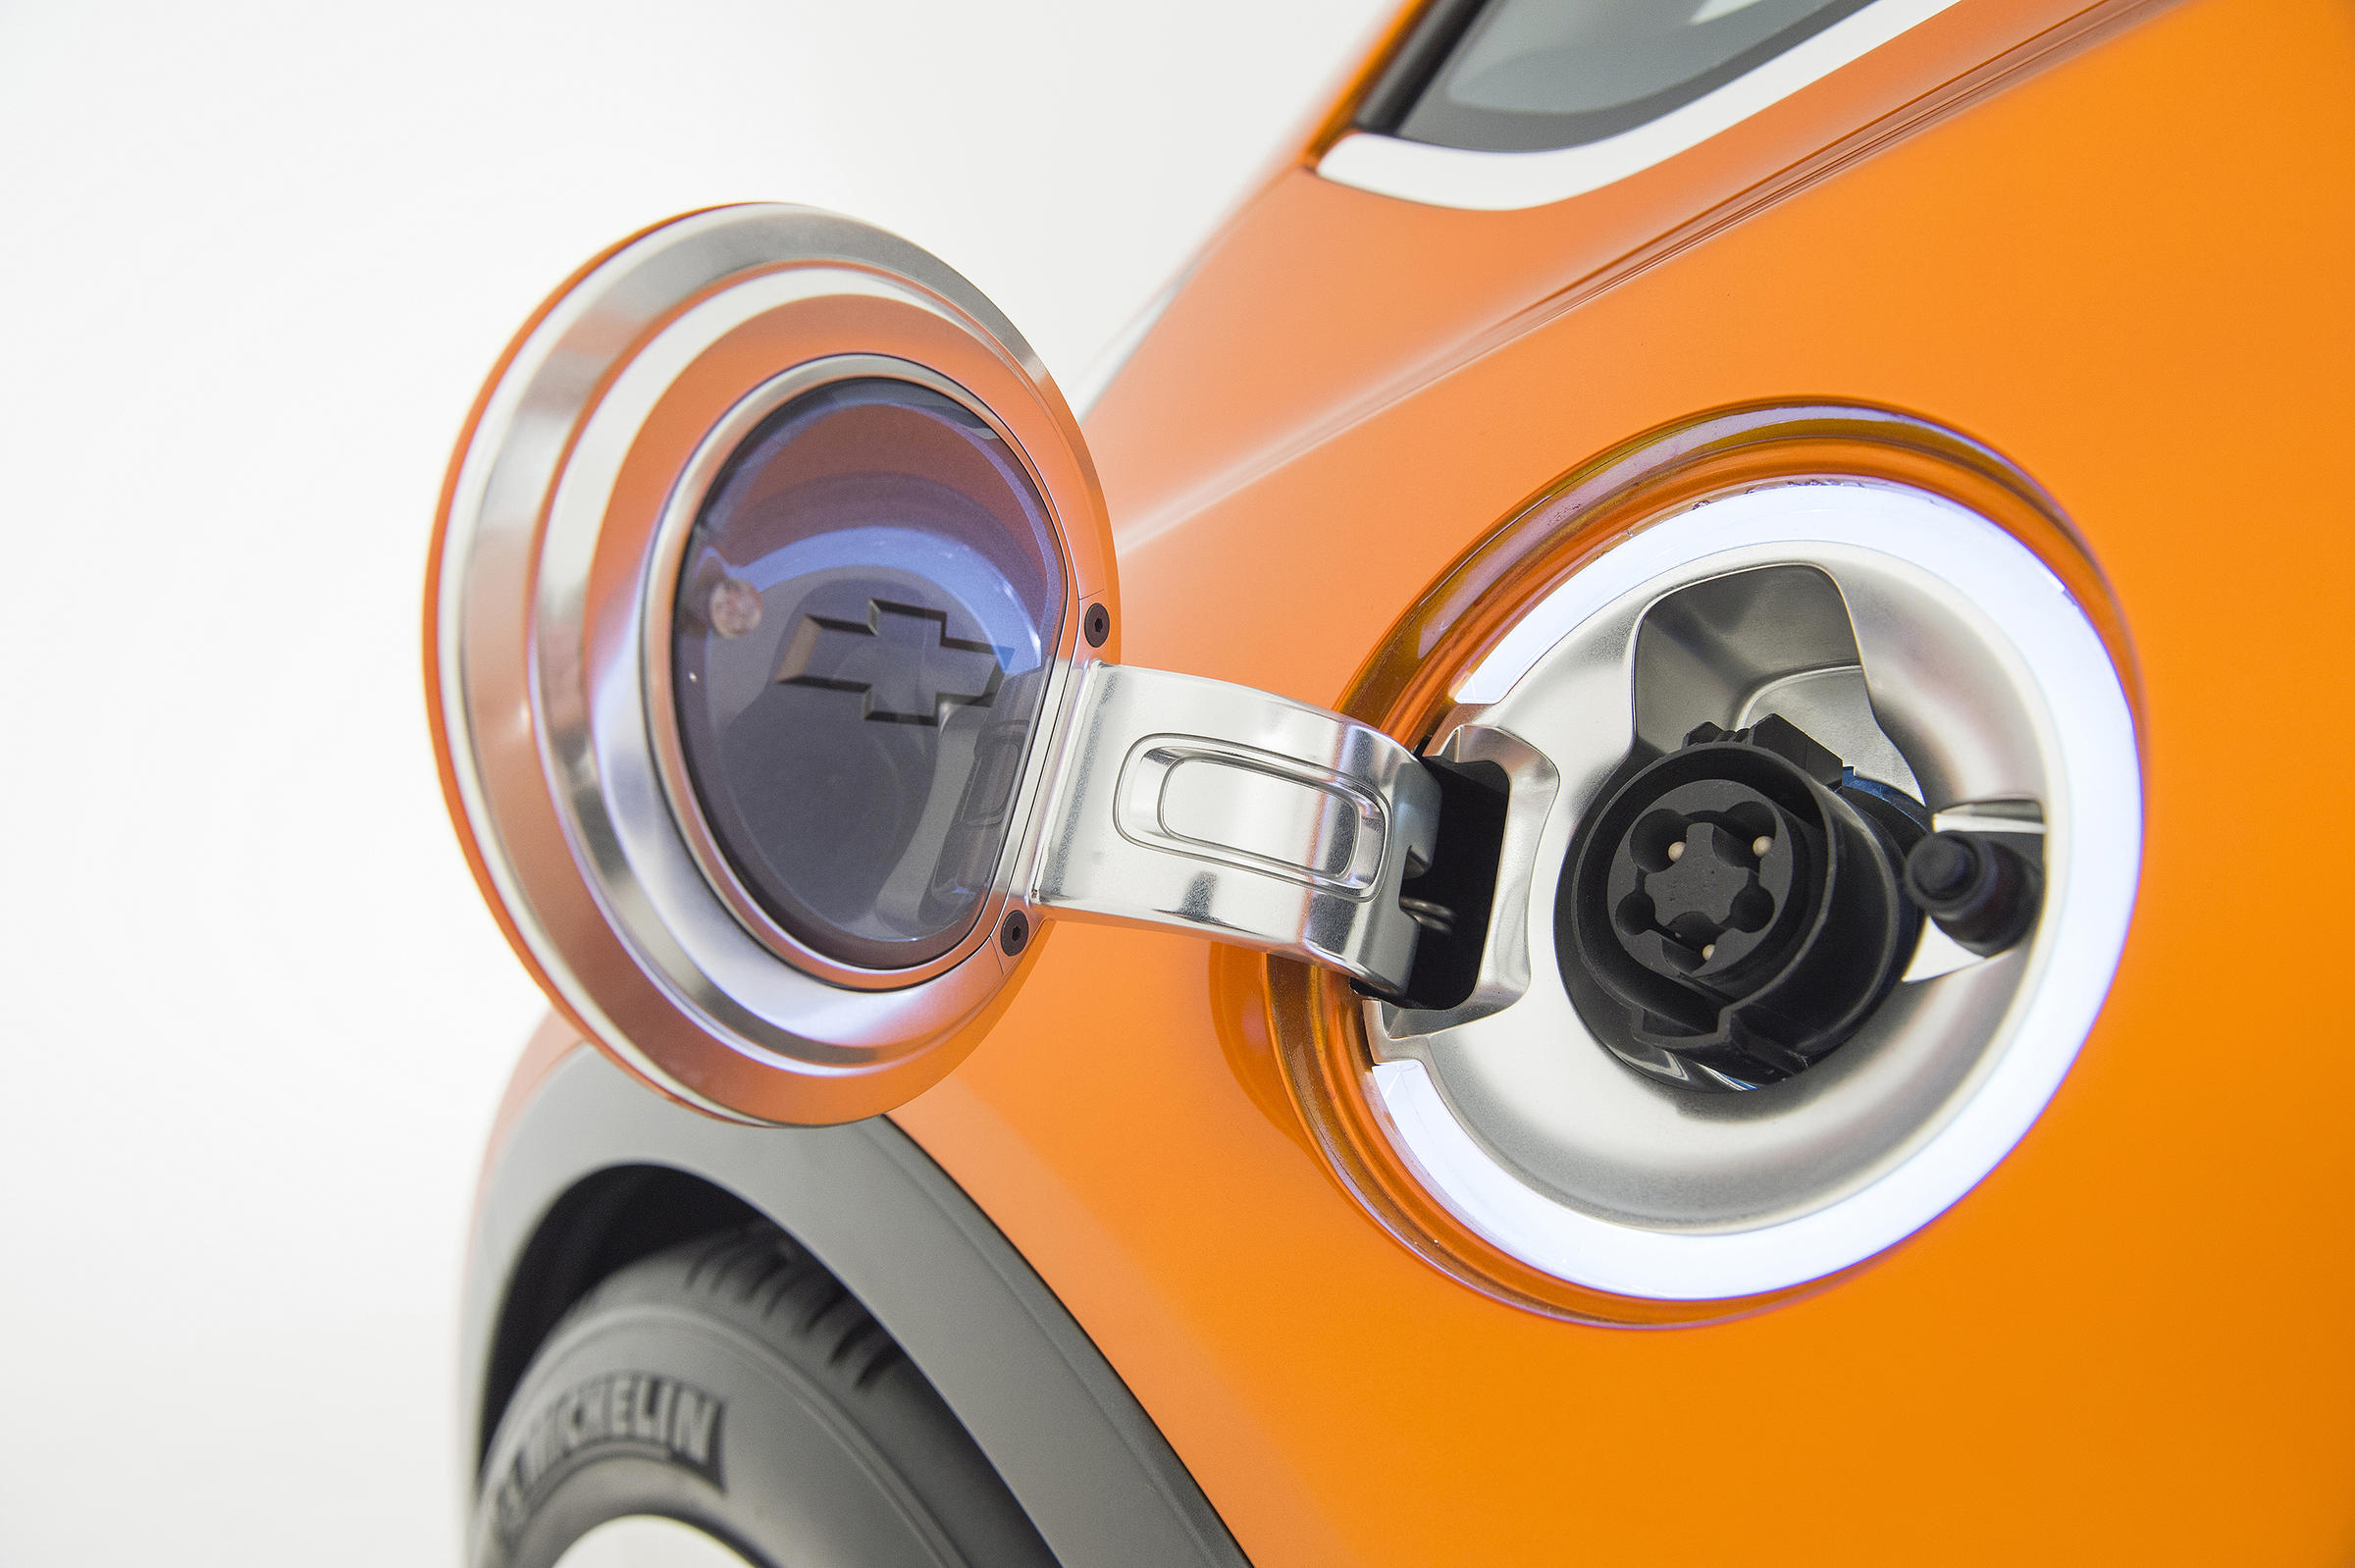 gm announces chevy bolt affordable longer range electric car